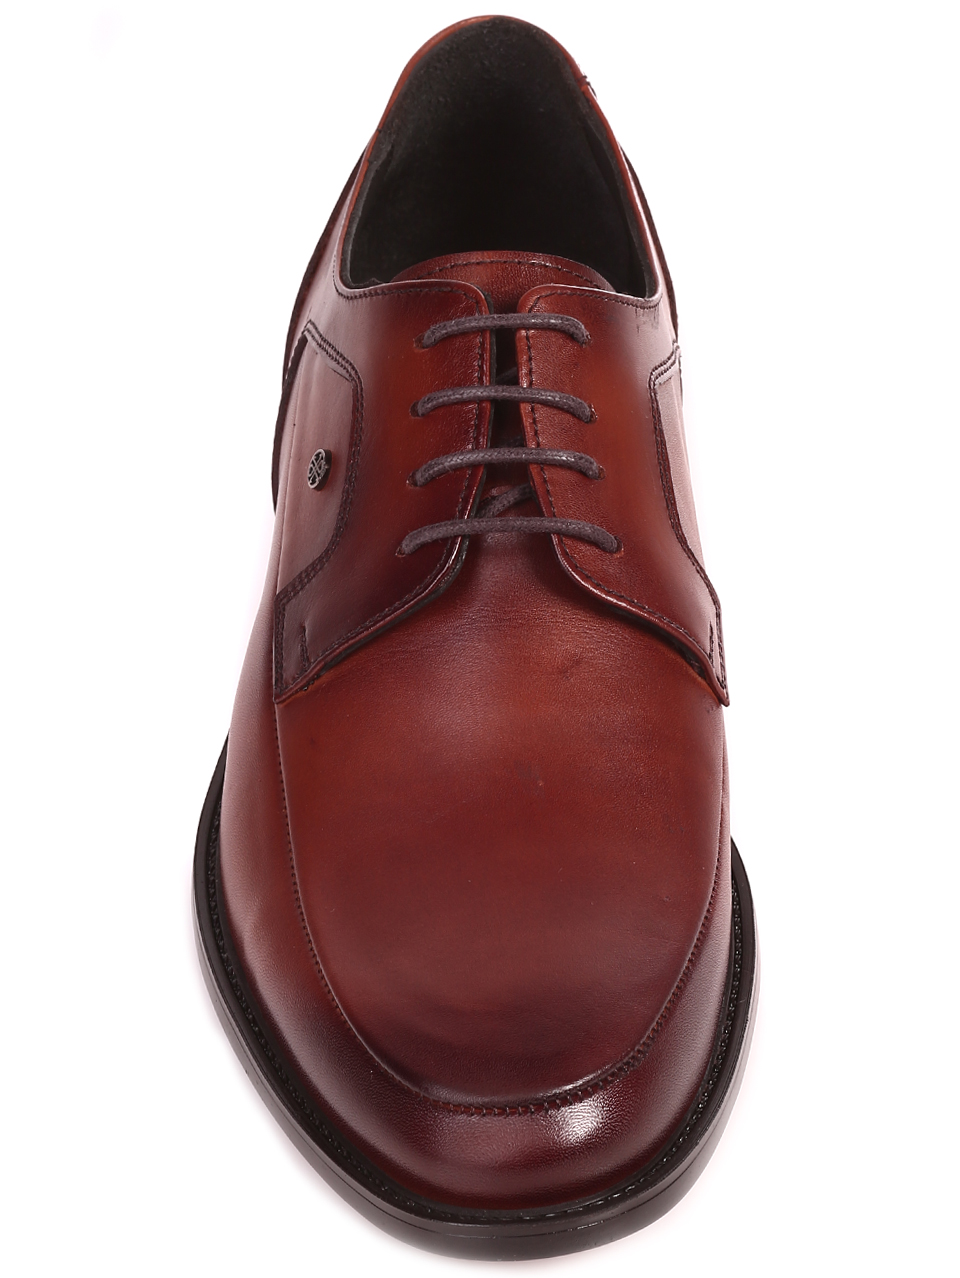  Елегантни мъжки обувки от естествена кожа 153-5833 dk.brown